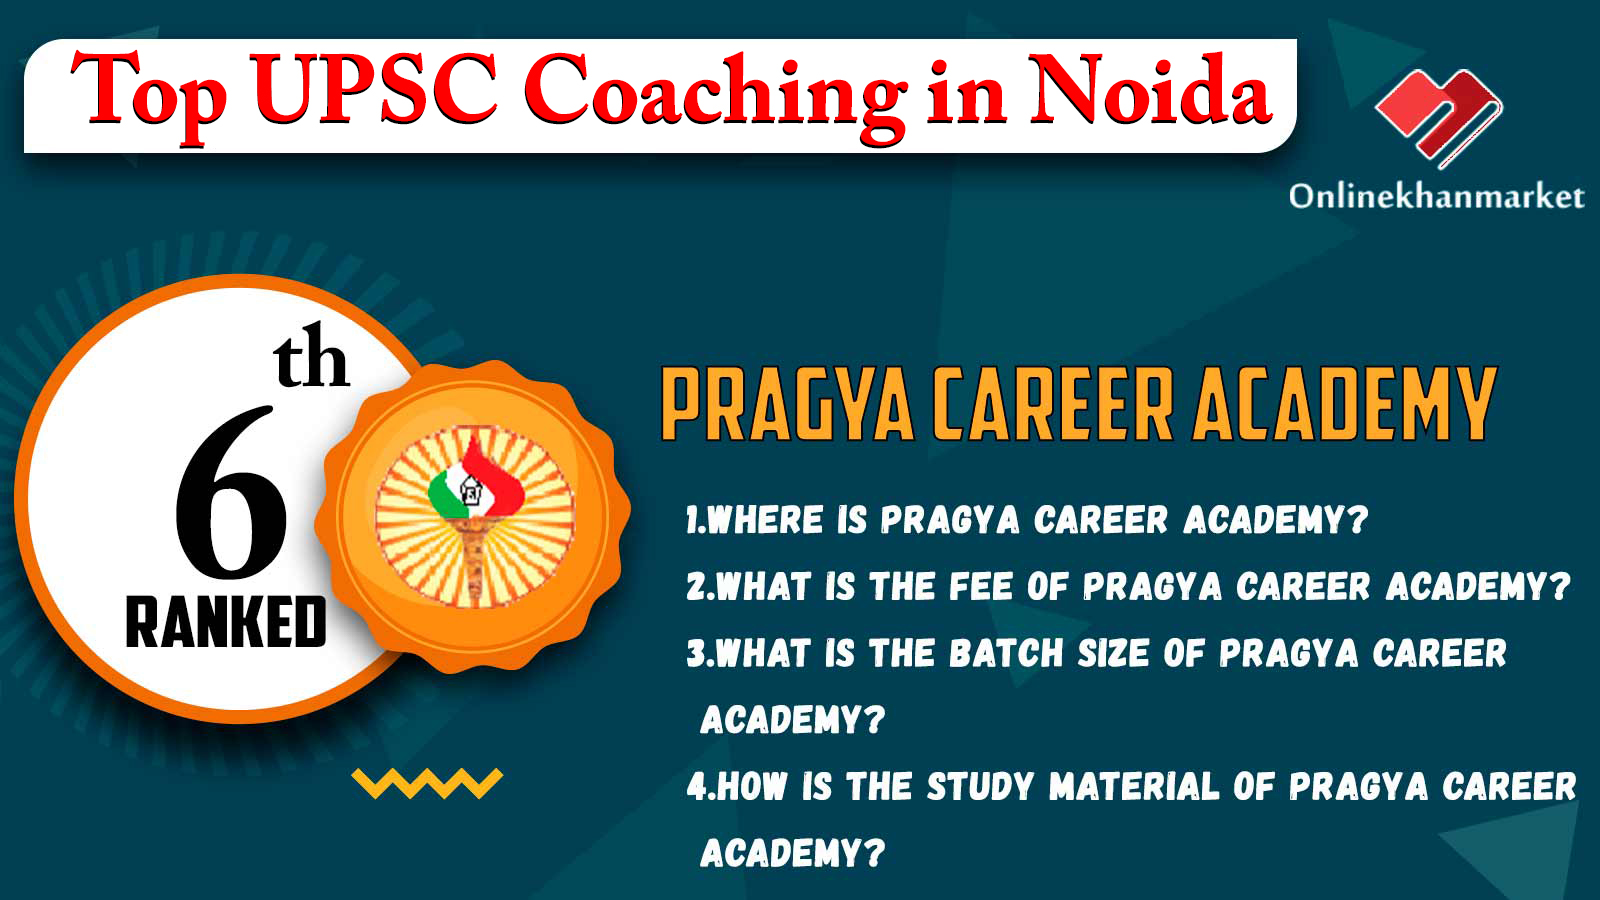 Top UPSC Coaching in Noida